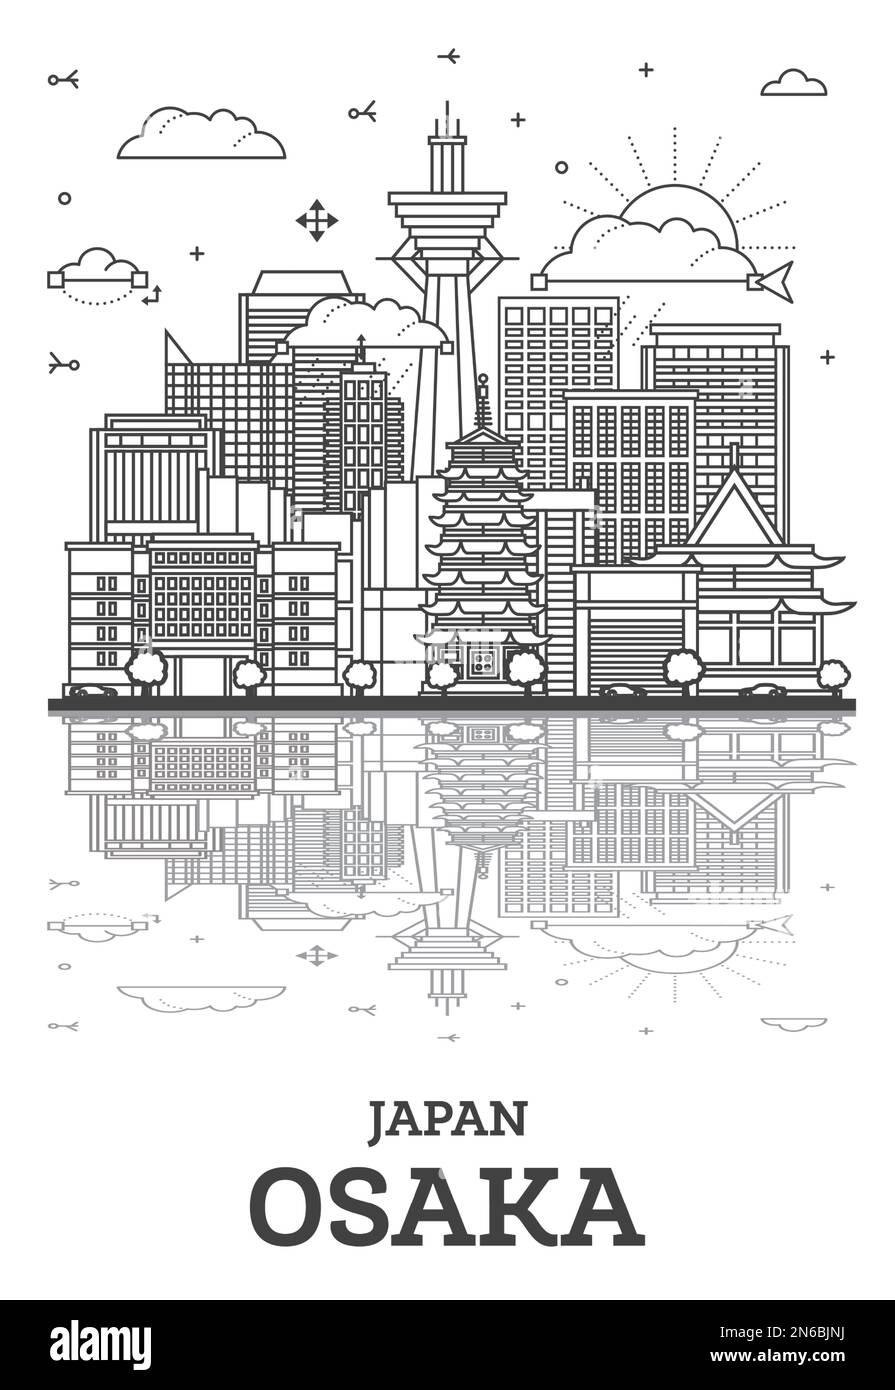 Umreißen Sie die Skyline von Osaka Japan City mit modernen Gebäuden und Reflektionen, isoliert auf Weiß. Stadtbild von Osaka mit Wahrzeichen. Vektordarstellung. Stock Vektor